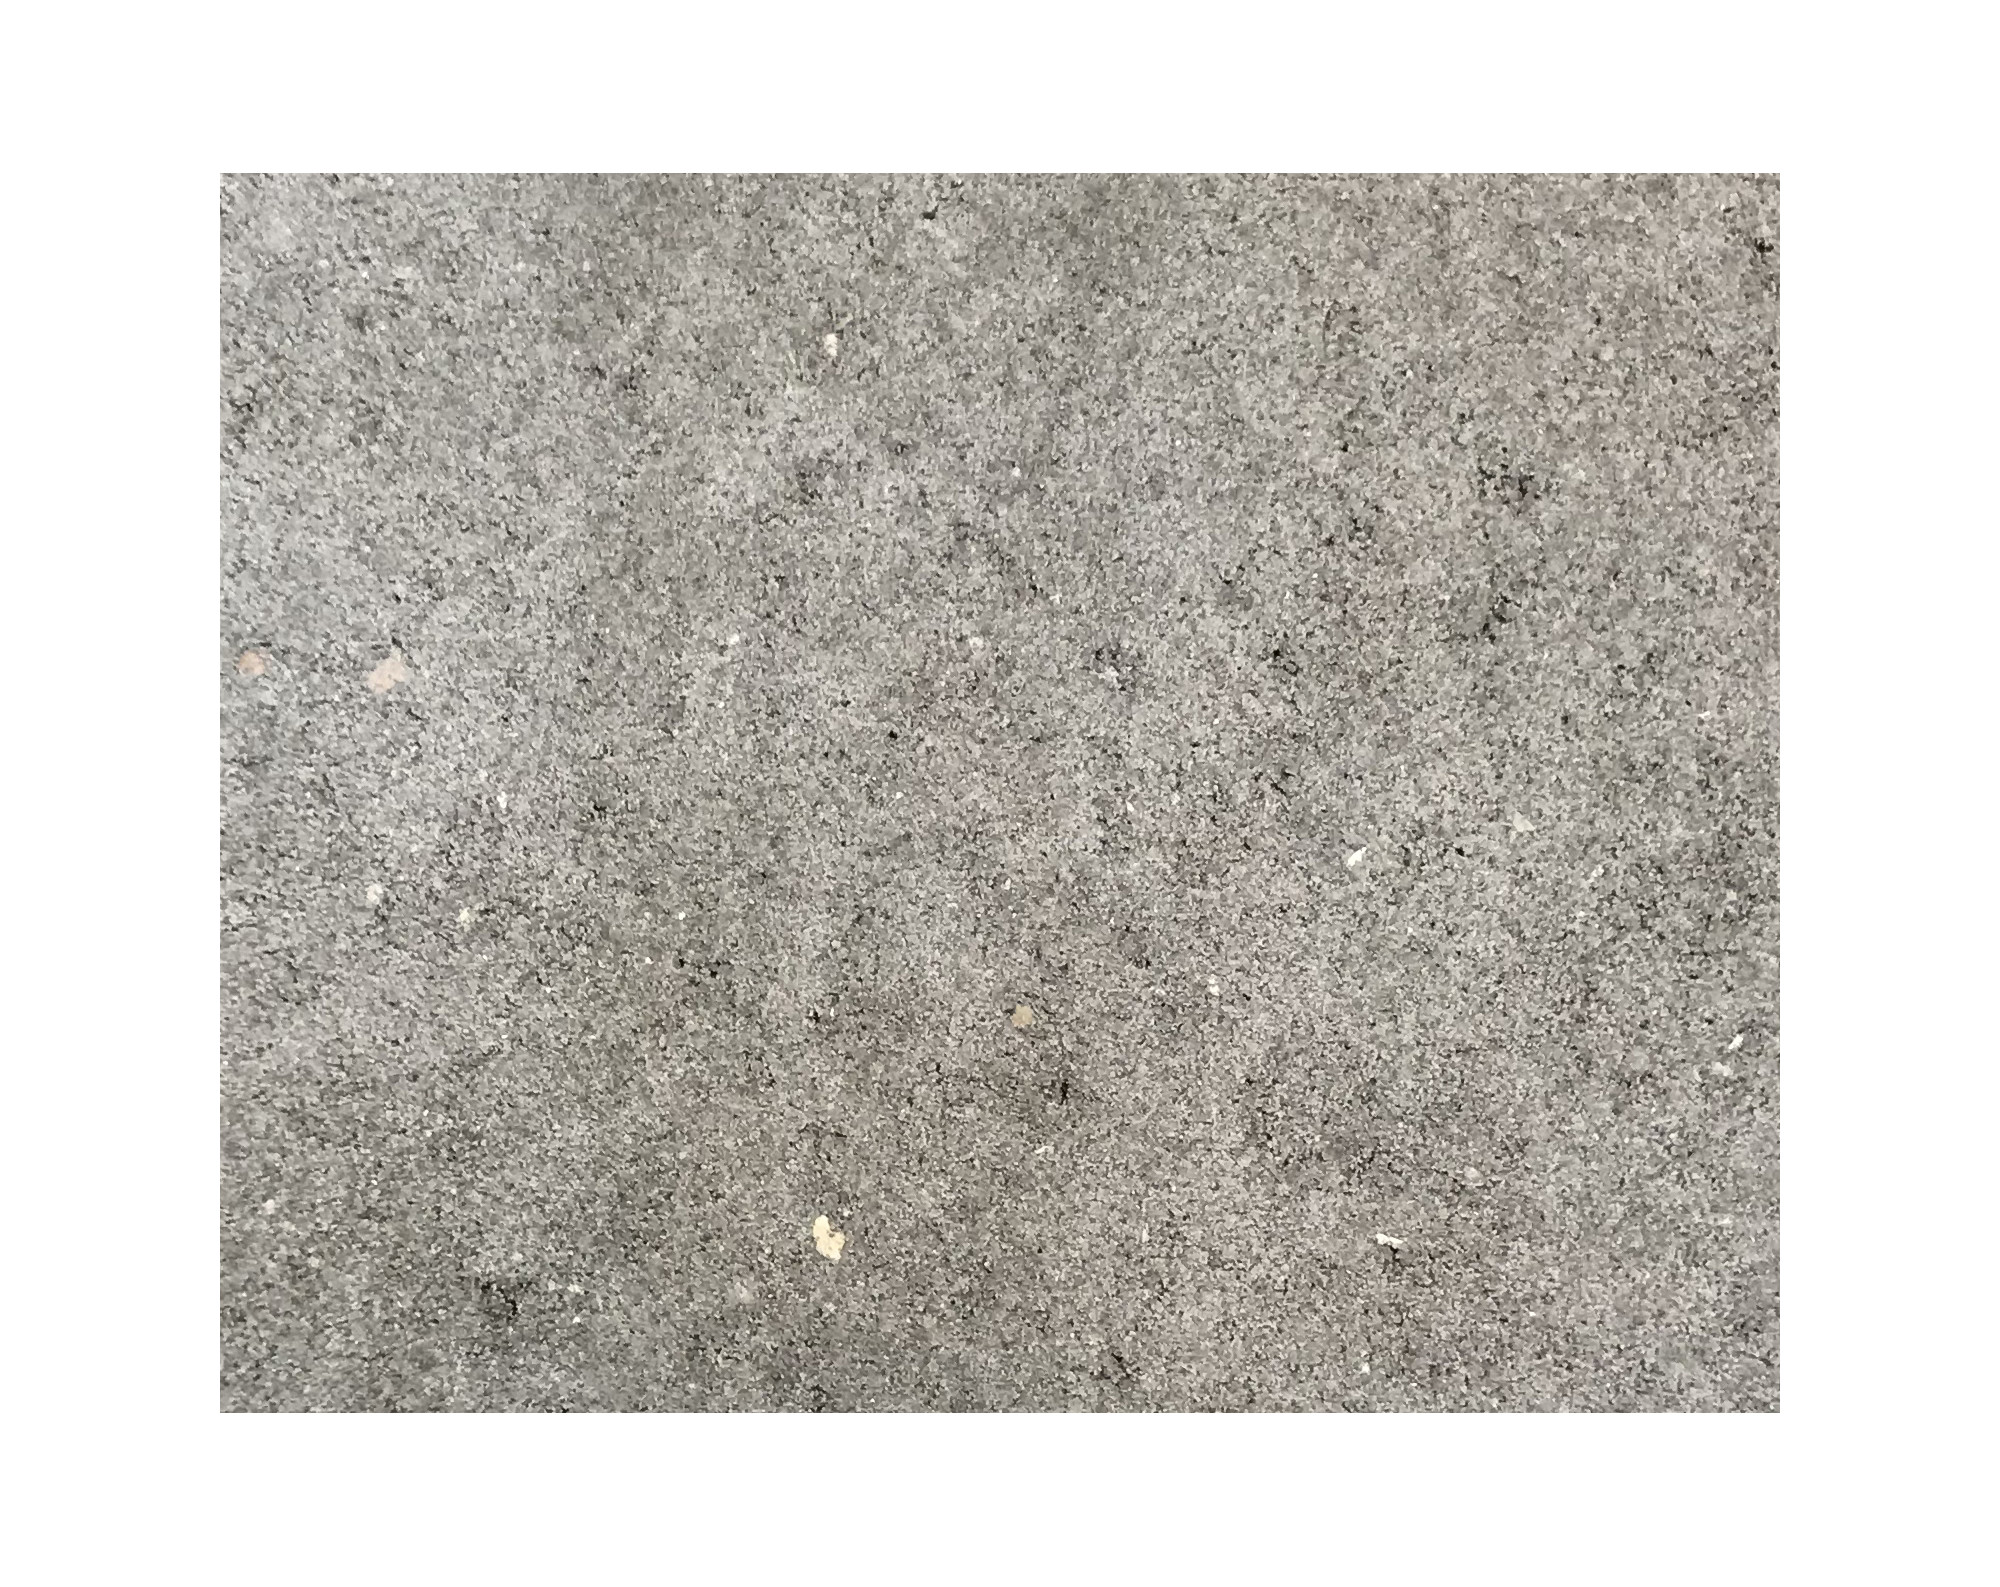 Harmo roc athenset, rustica-serie, ovaal d: 6,00mx12,60m, grijs, beton